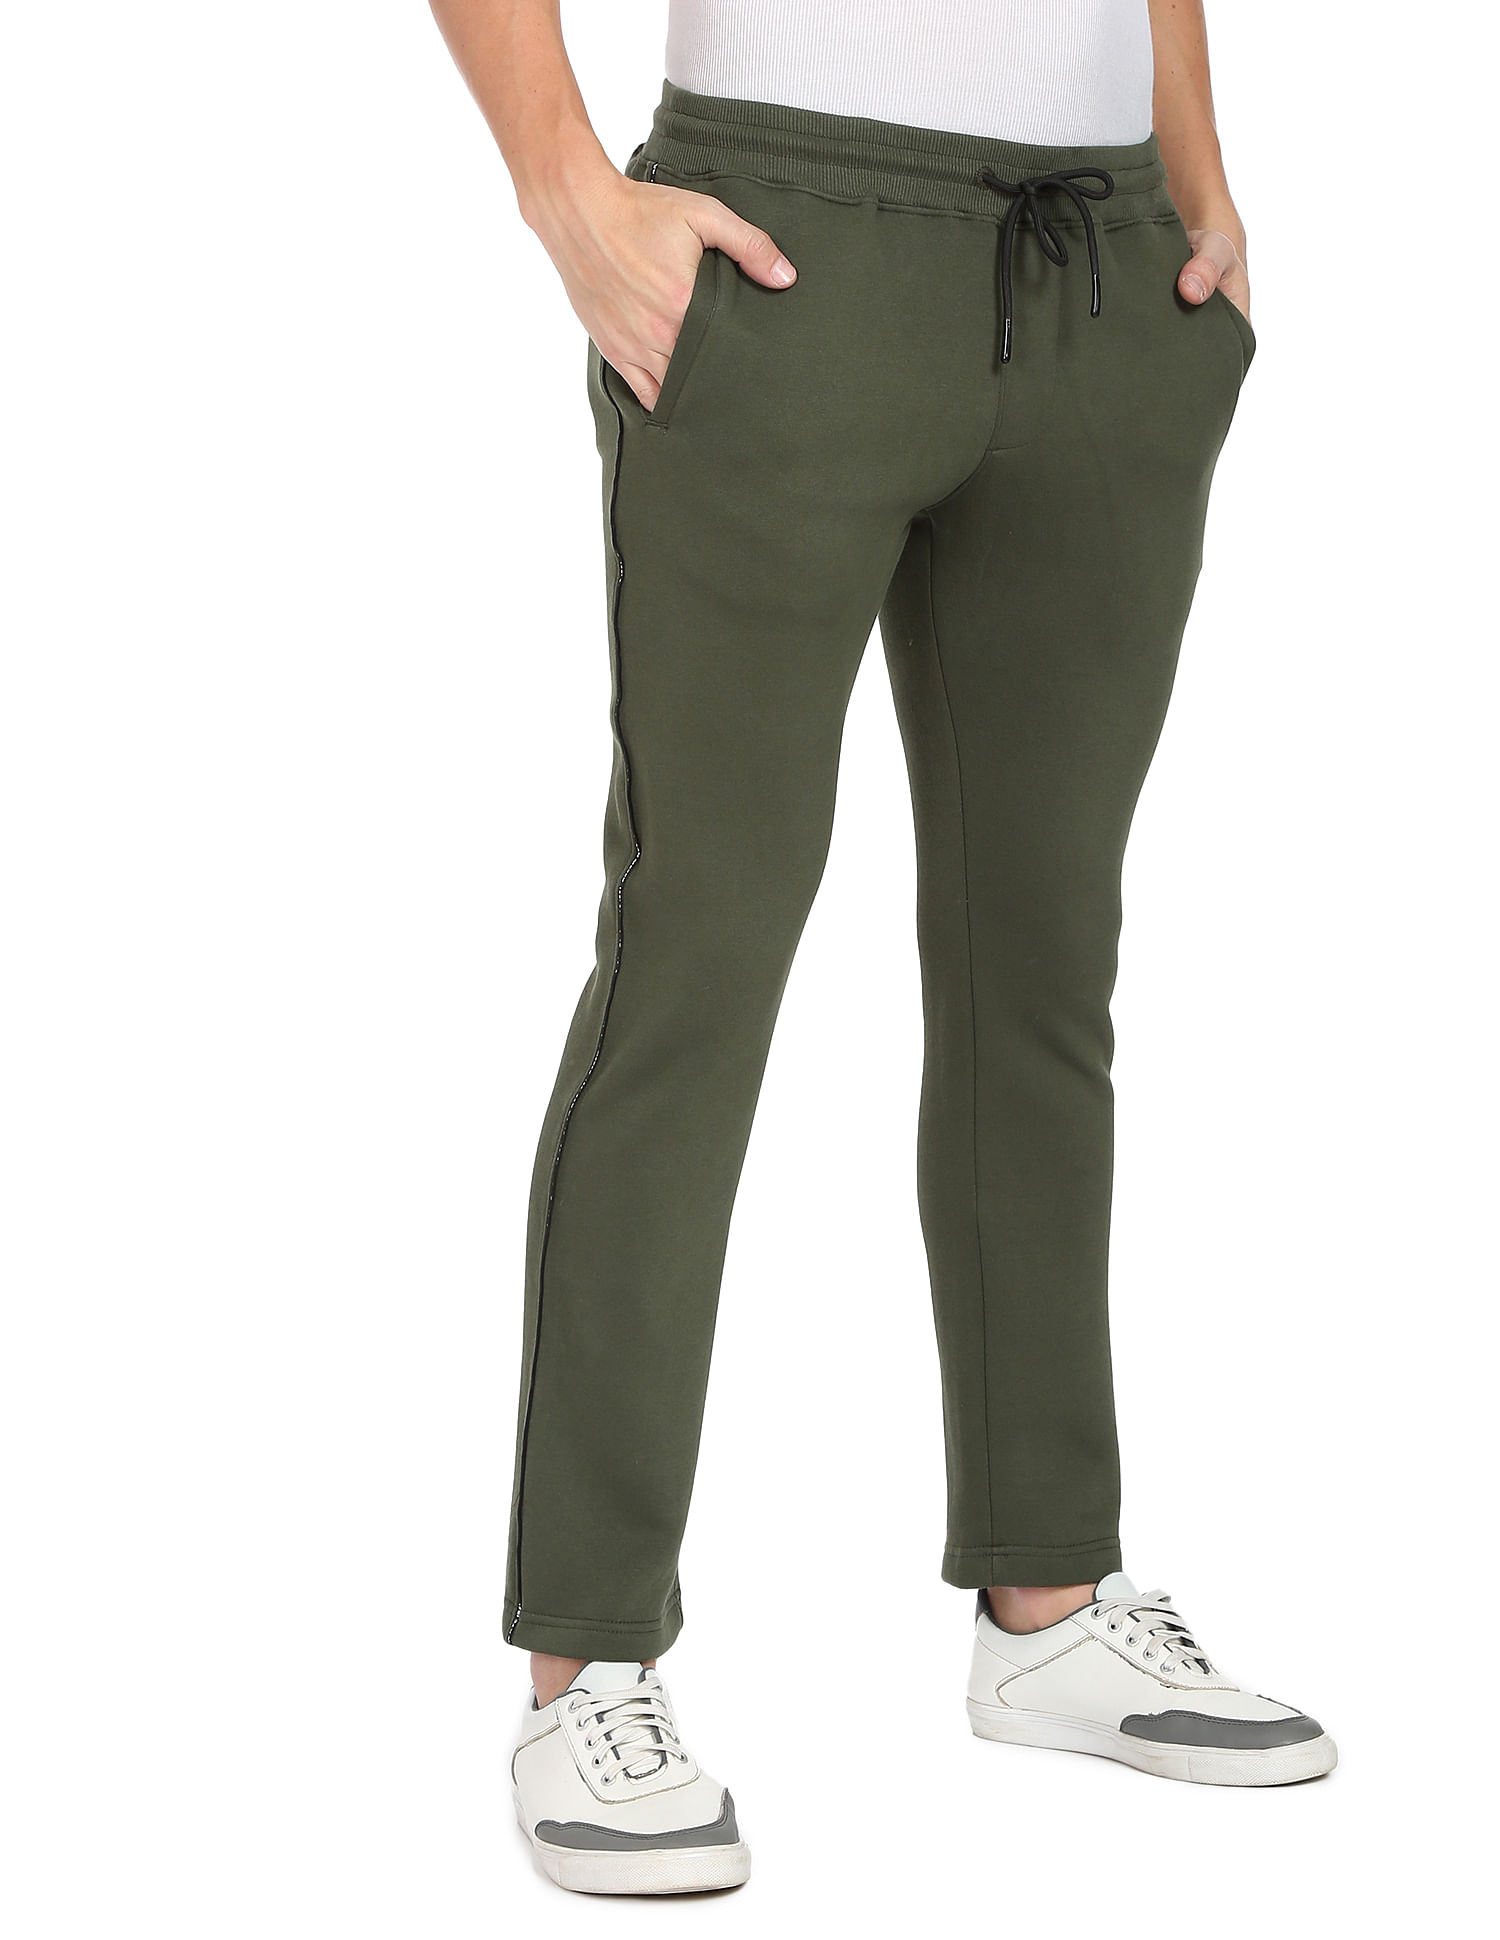 Buy Men's Green Brand Logo Printed Slim Fit Track Pants Online at Bewakoof